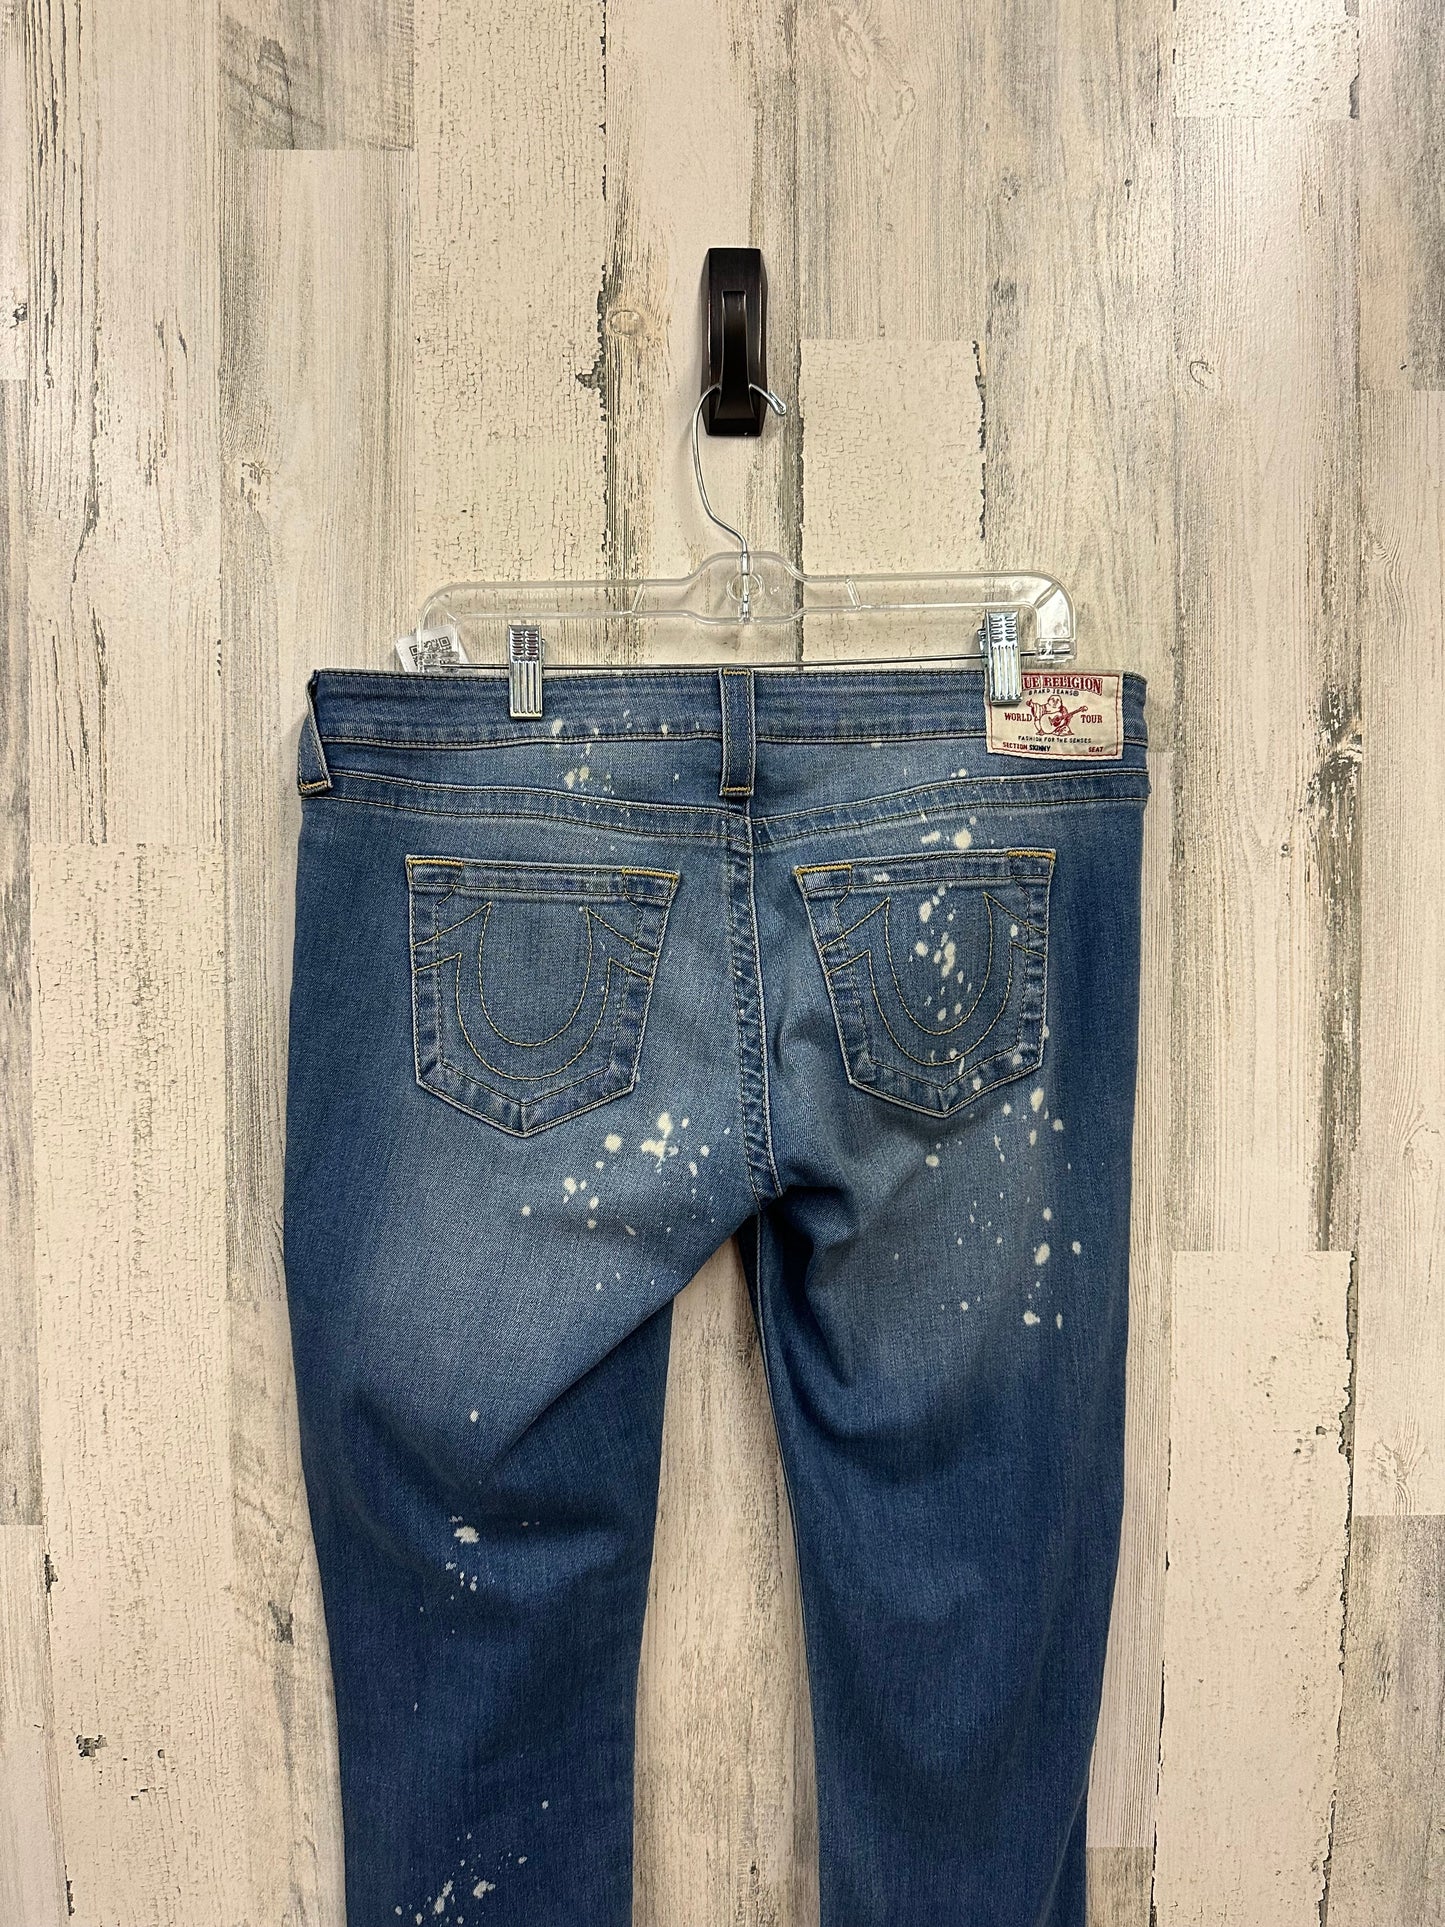 Jeans Skinny By True Religion  Size: 16